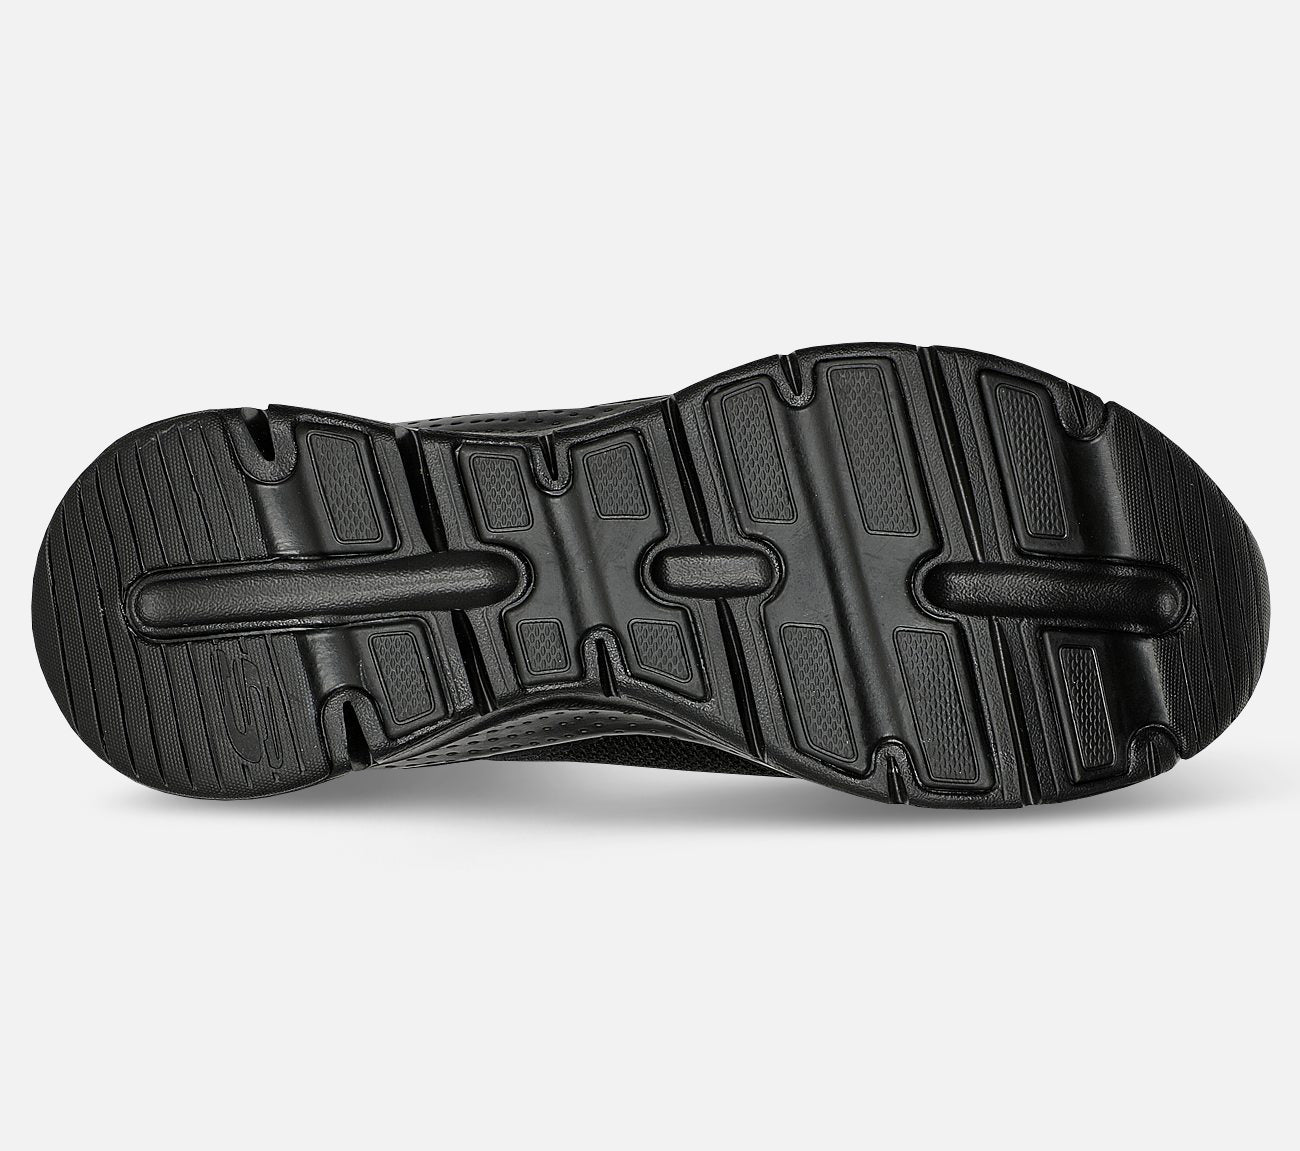 Arch Fit – New Energy Waterproof Shoe Skechers